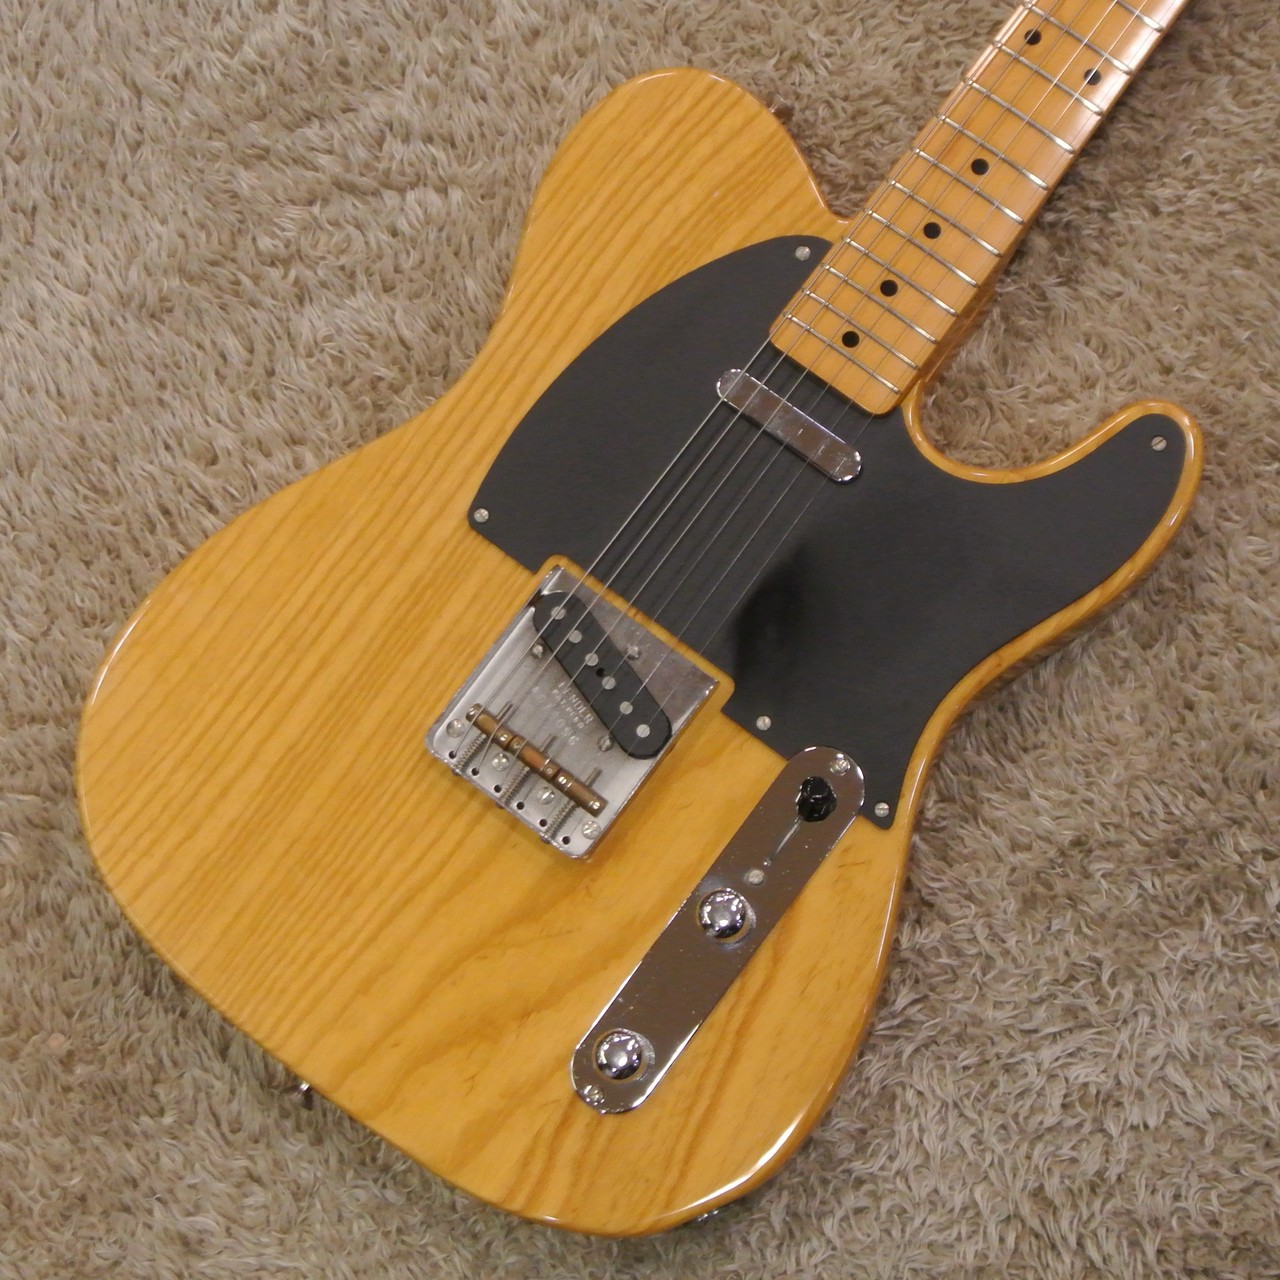 Fender Japan TL-52 TX USB-